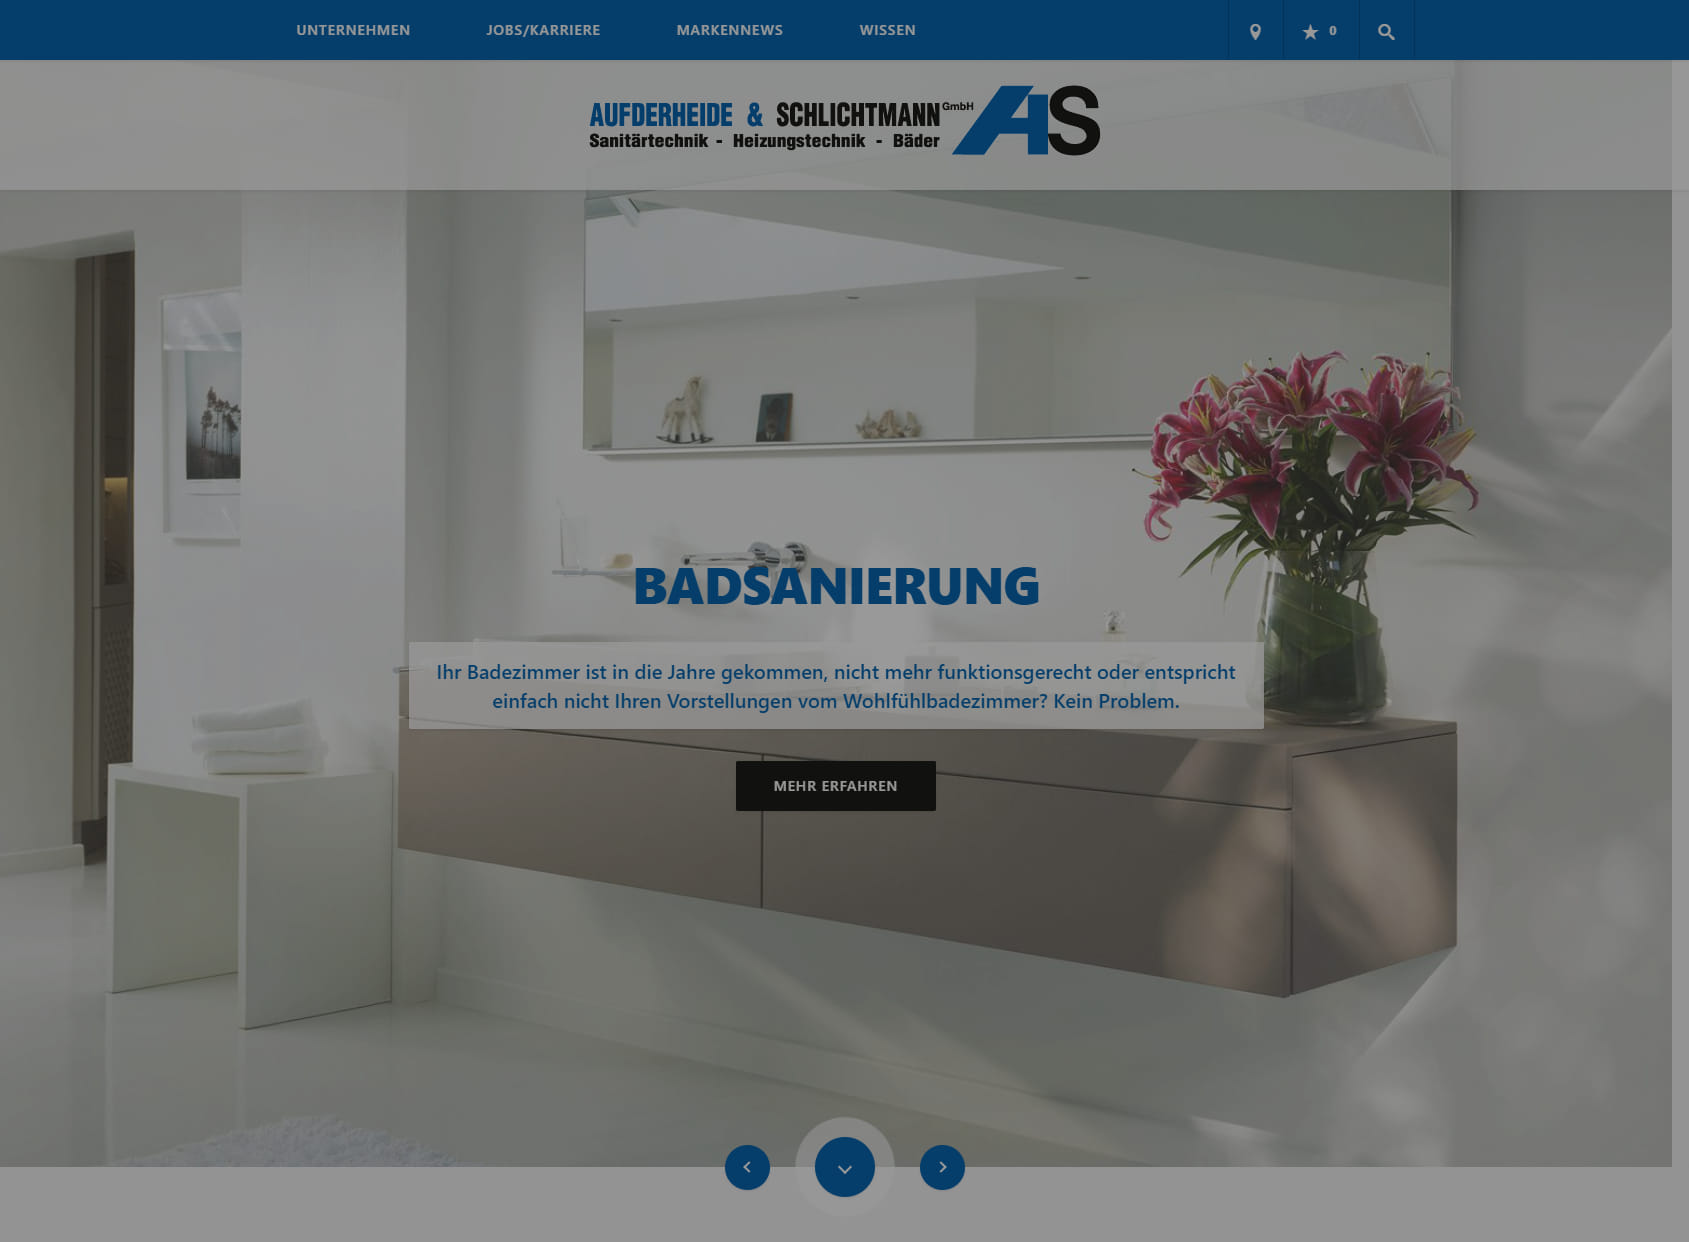 Aufderheide & Schlichtmann GmbH Heizungsbauunternehmen